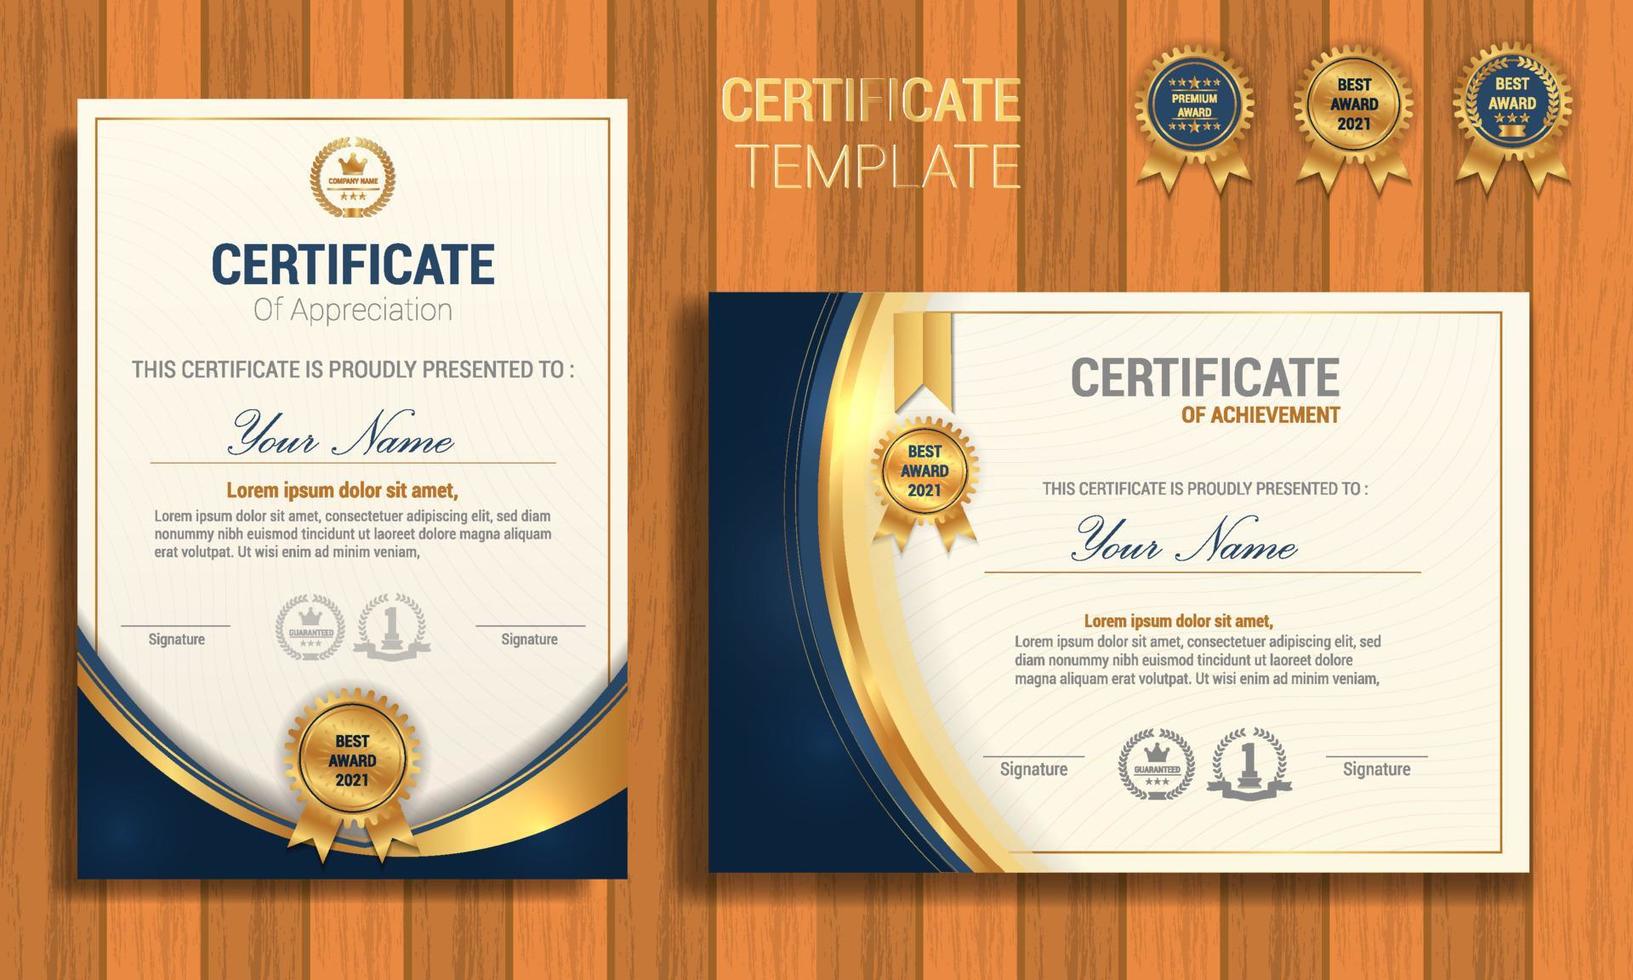 Anerkennungszertifikat Vorlage, Gold und Blau. sauberes modernes Zertifikat mit goldenem Abzeichen. Zertifikatsrahmenschablone mit luxuriösem und modernem Linienmuster. Diplom Vektor Vorlage